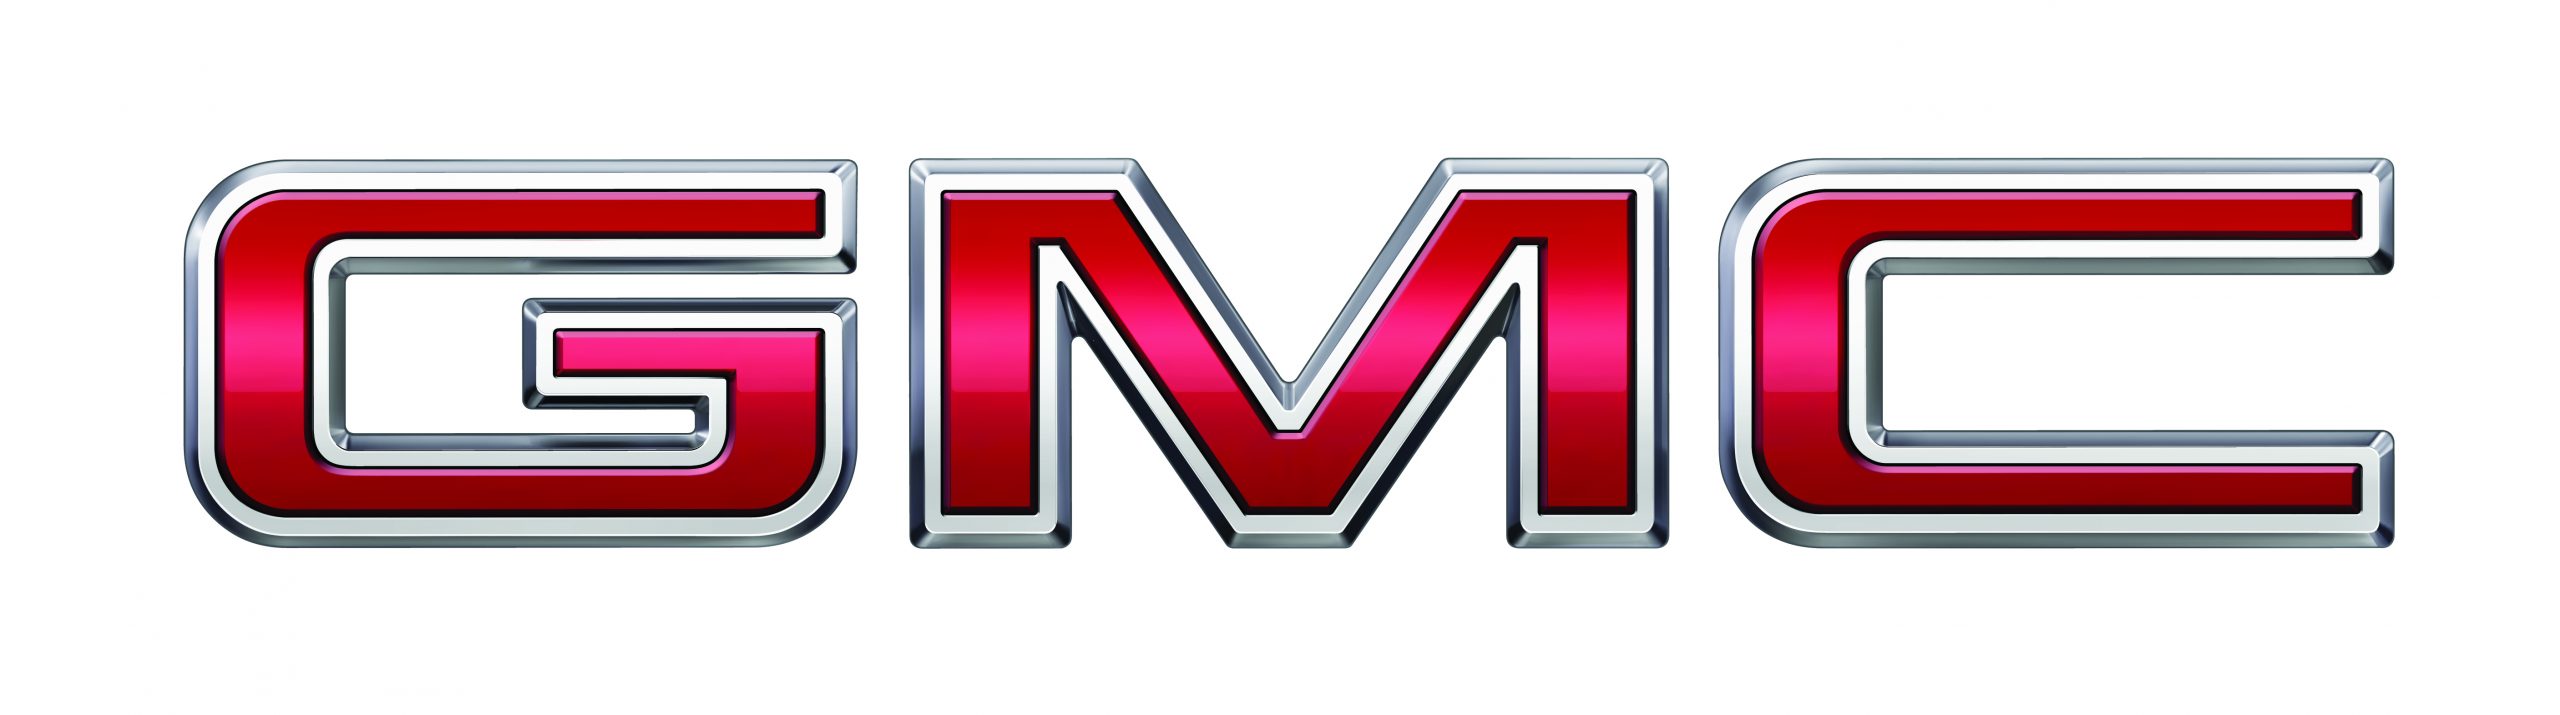 2019년 GMC_Logo일